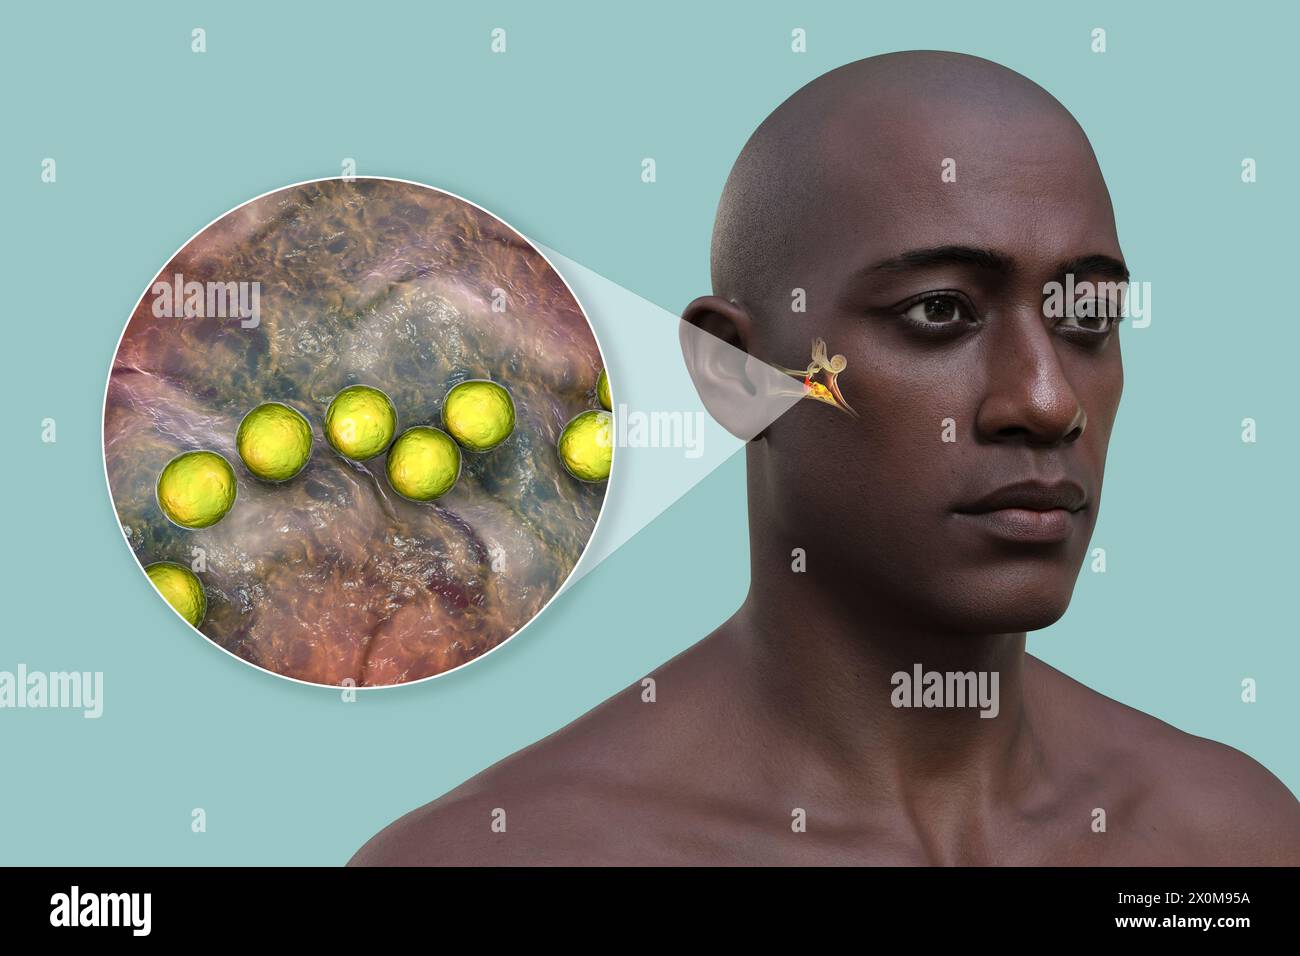 3D-Darstellung eines Mannes mit einer bakteriellen Mittelohrinfektion (Otitis Media) und einer Nahaufnahme der verursachenden Bakterien. Zu den Symptomen gehören Entzündungen, Flüssigkeitsansammlungen und Schmerzen im Ohr. Stockfoto